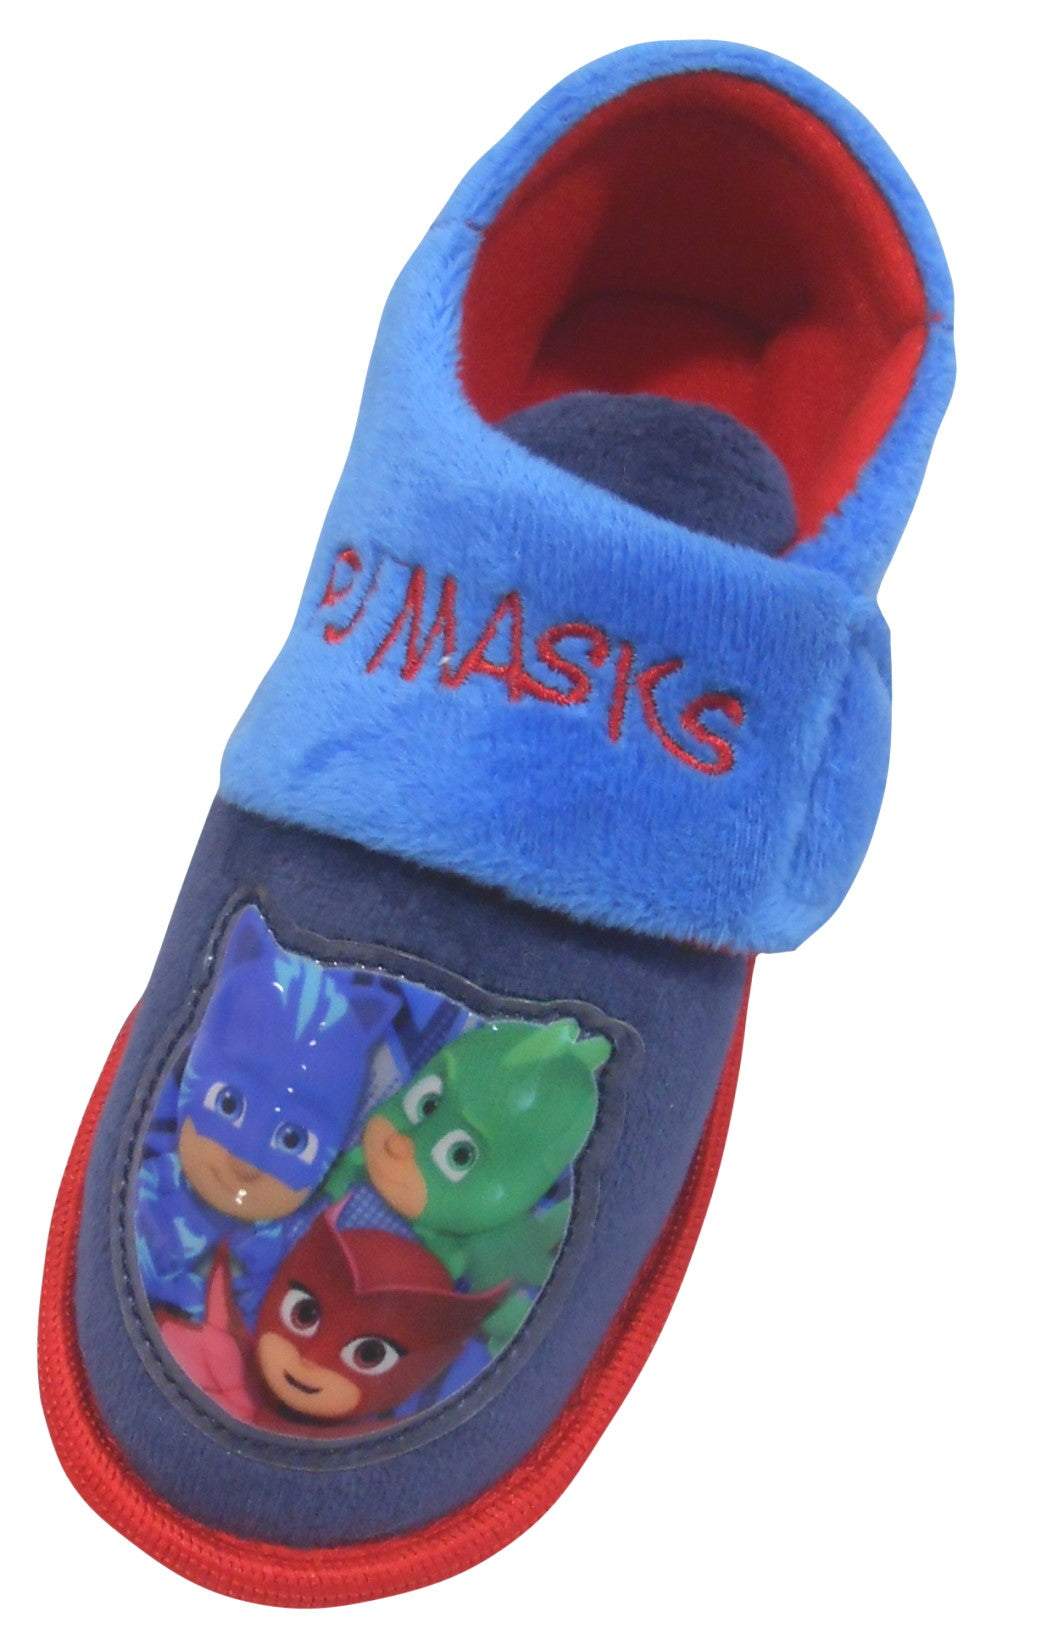 PJ Masks "Roan" Boys or Girls Toddler Slippers Sizes UK 4- UK 6